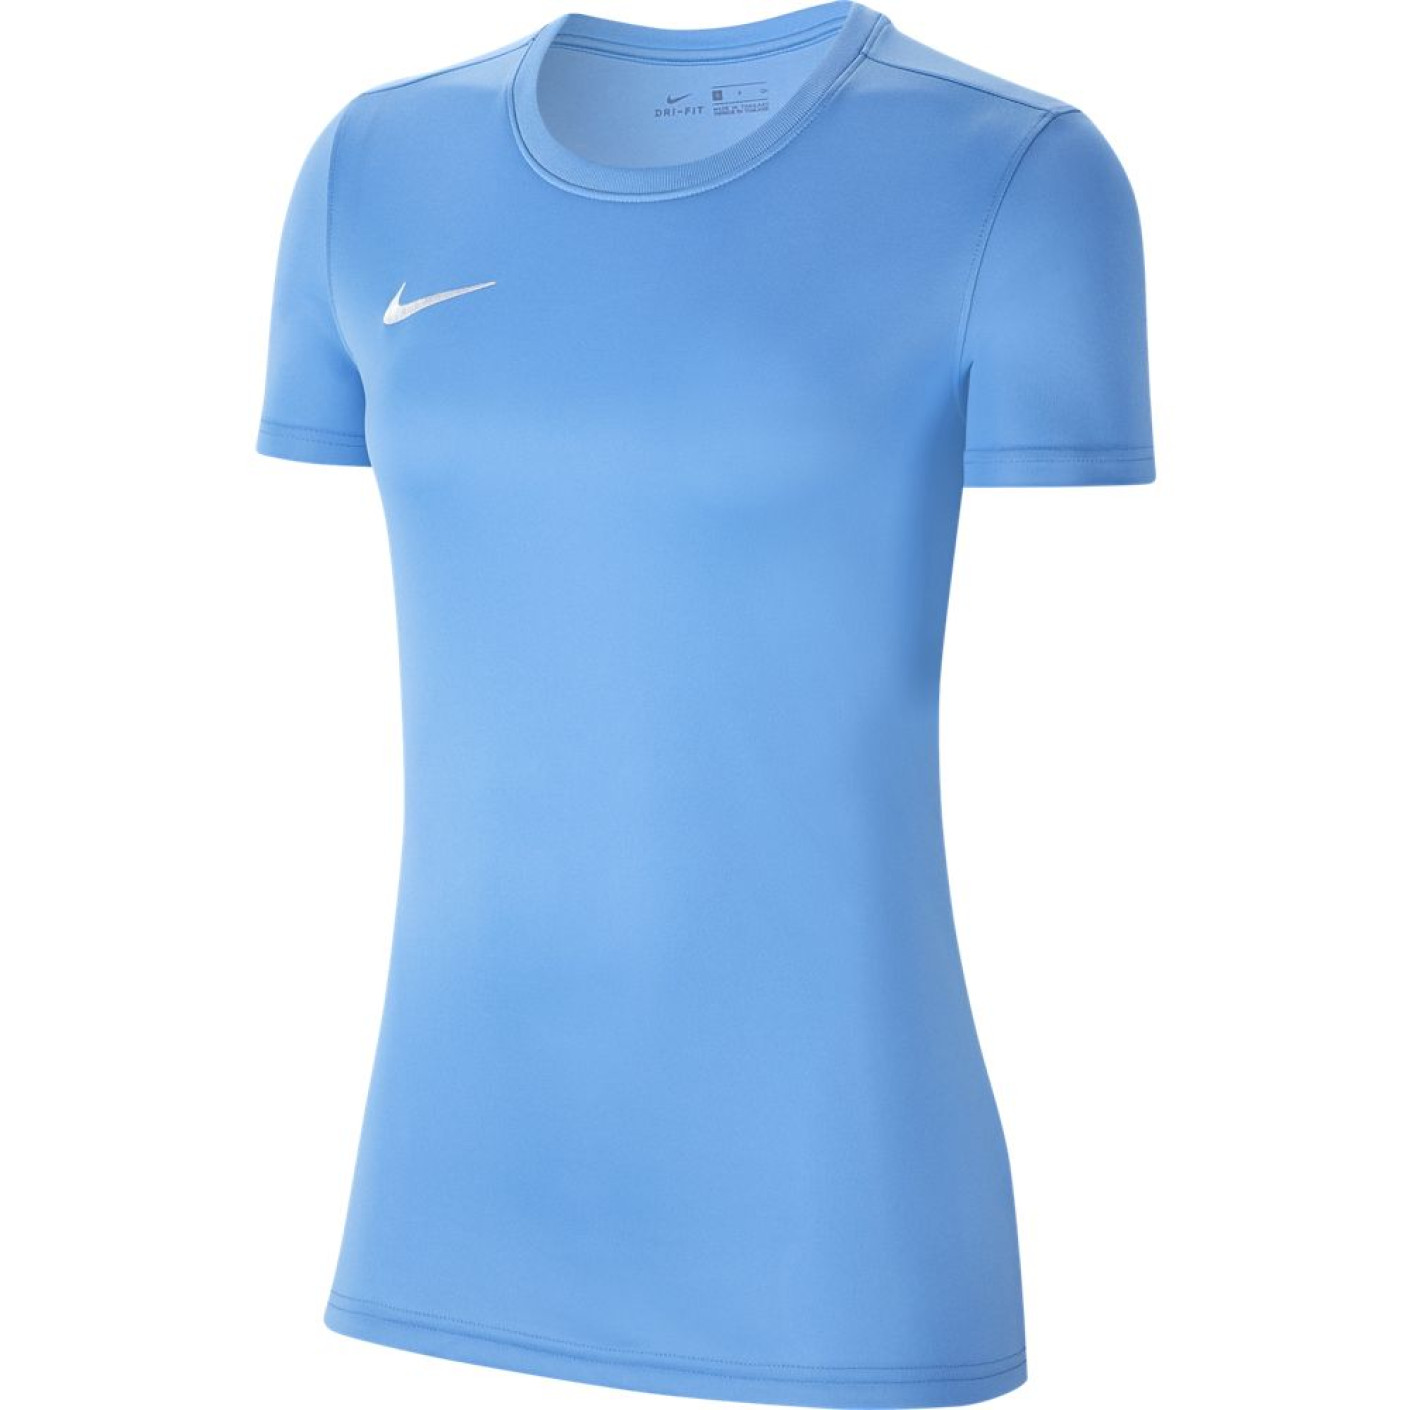 Nike Park VII Dri-Fit Women's Football Shirt Light Blue White